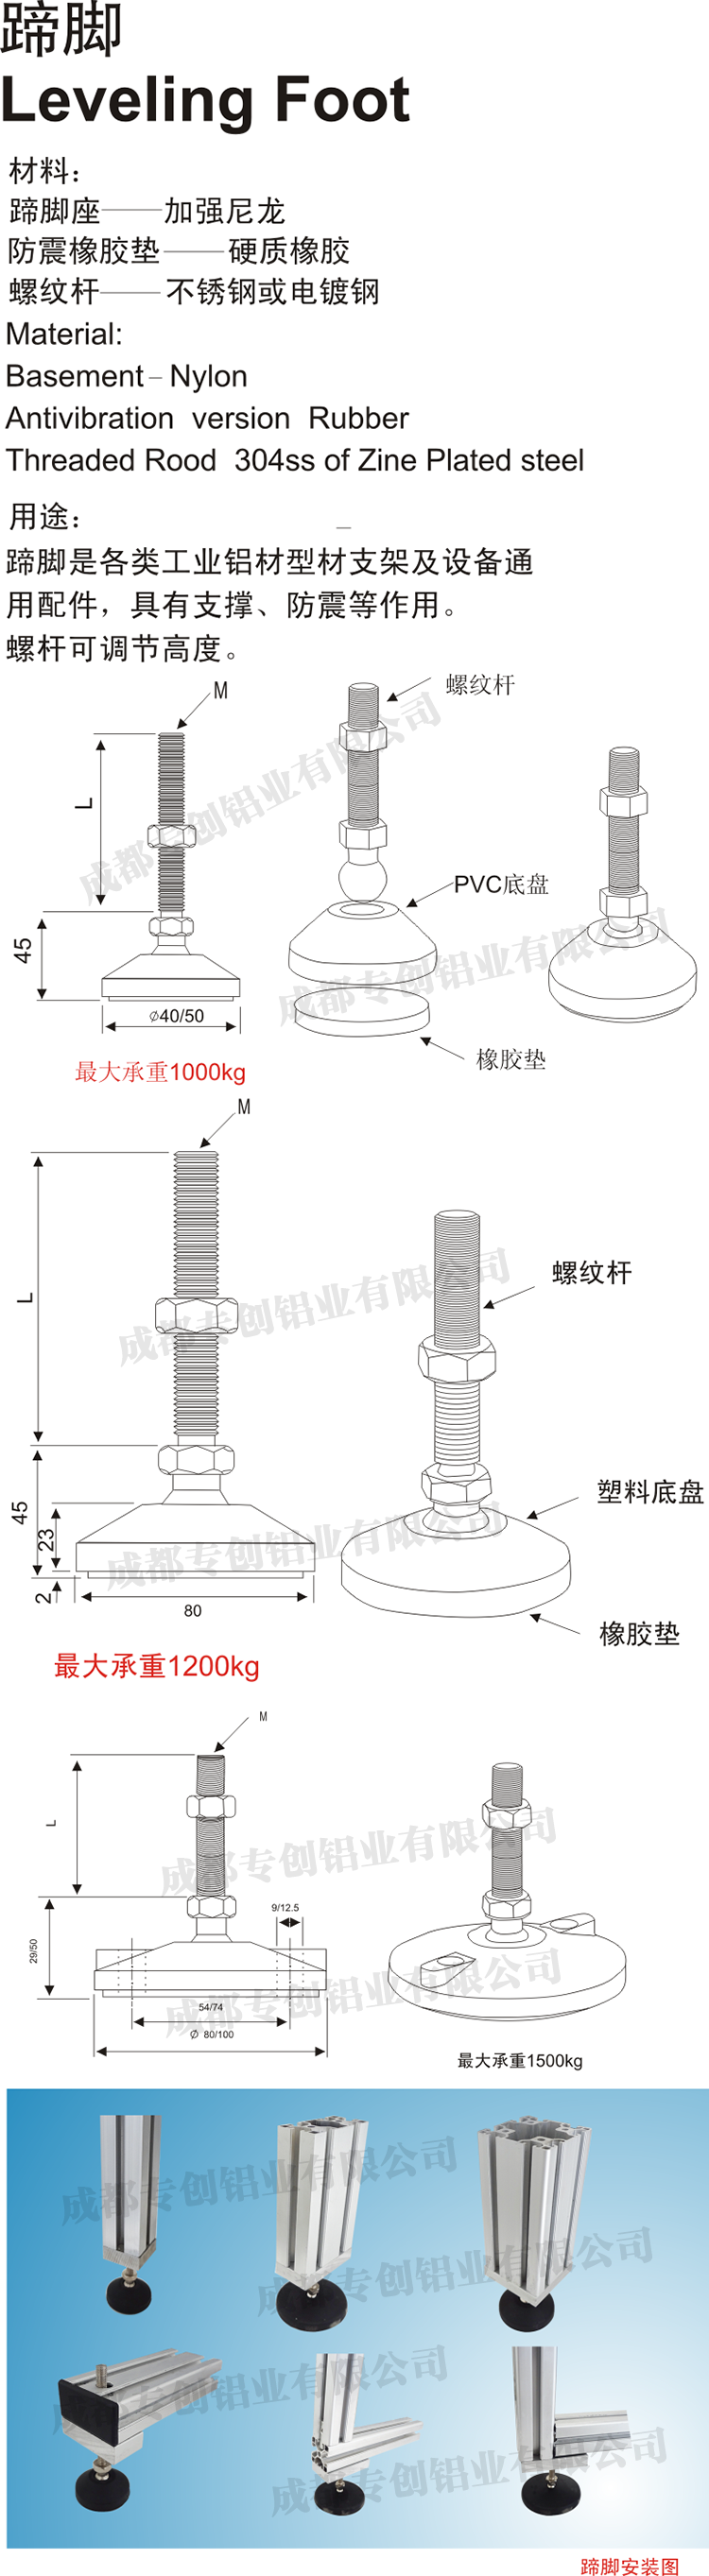 上海机械设备框架铝型材配件